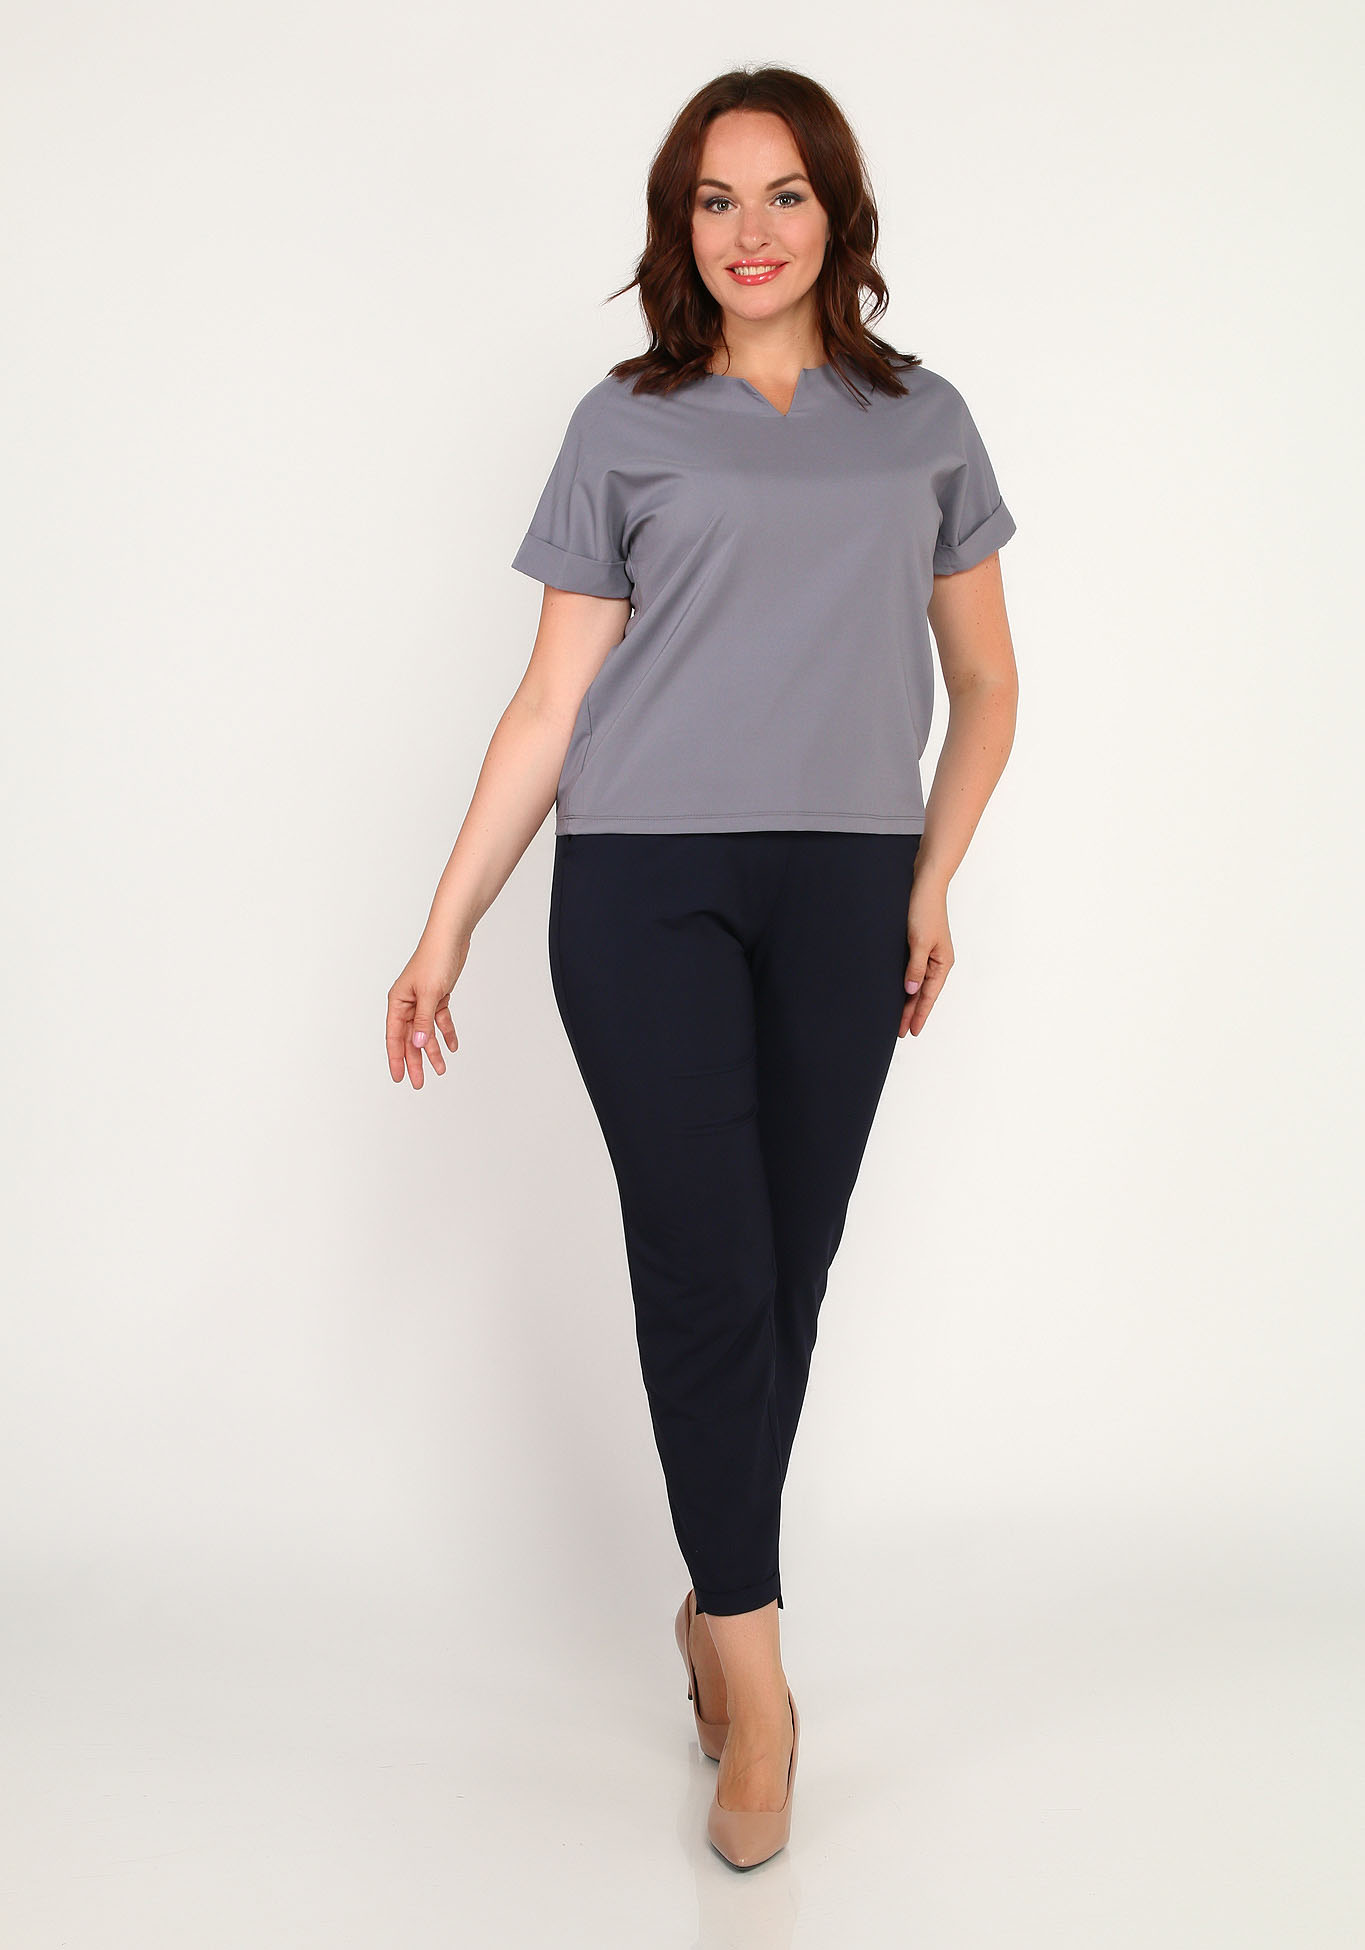 Блуза с коротким рукавом и фигурным вырезом Simple Story, размер 56, цвет серый - фото 2